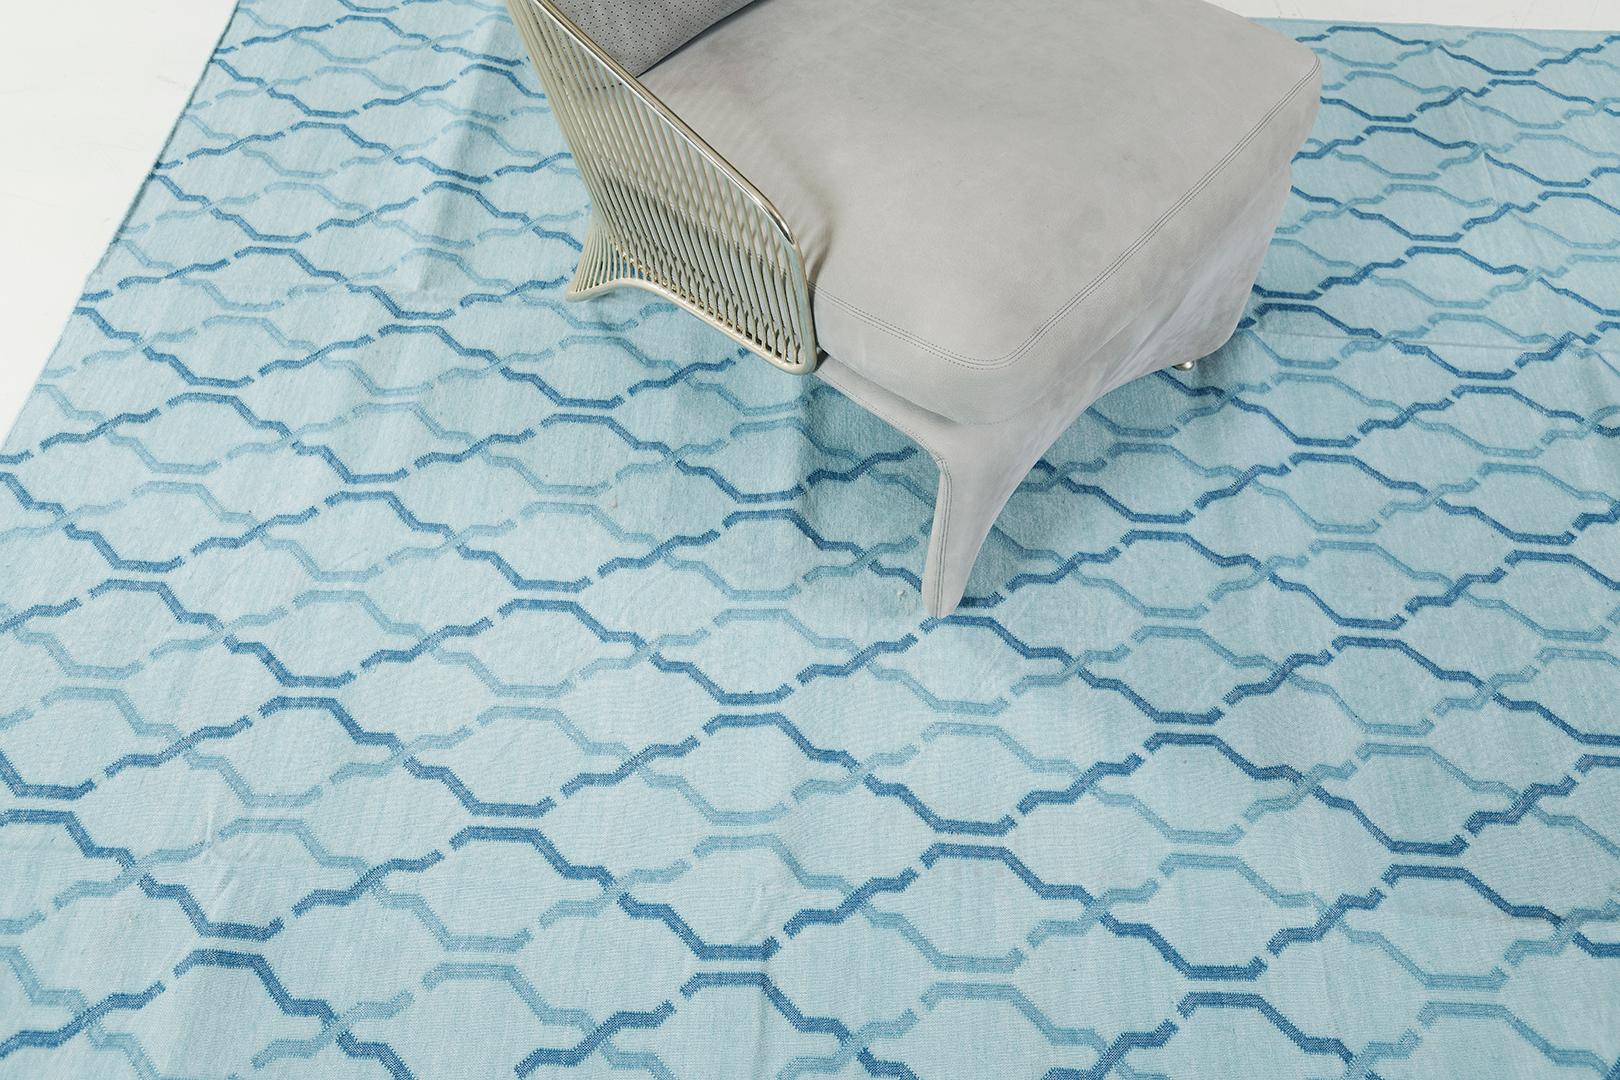 Le tapis 'Zenia' en turquoise est un tapis contemporain à tissage plat qui est un exemple de sophistication confortable. Doté d'un élégant motif géométrique, ce tapis moderne séduira à coup sûr l'esprit artistique de tout spectateur. La collection